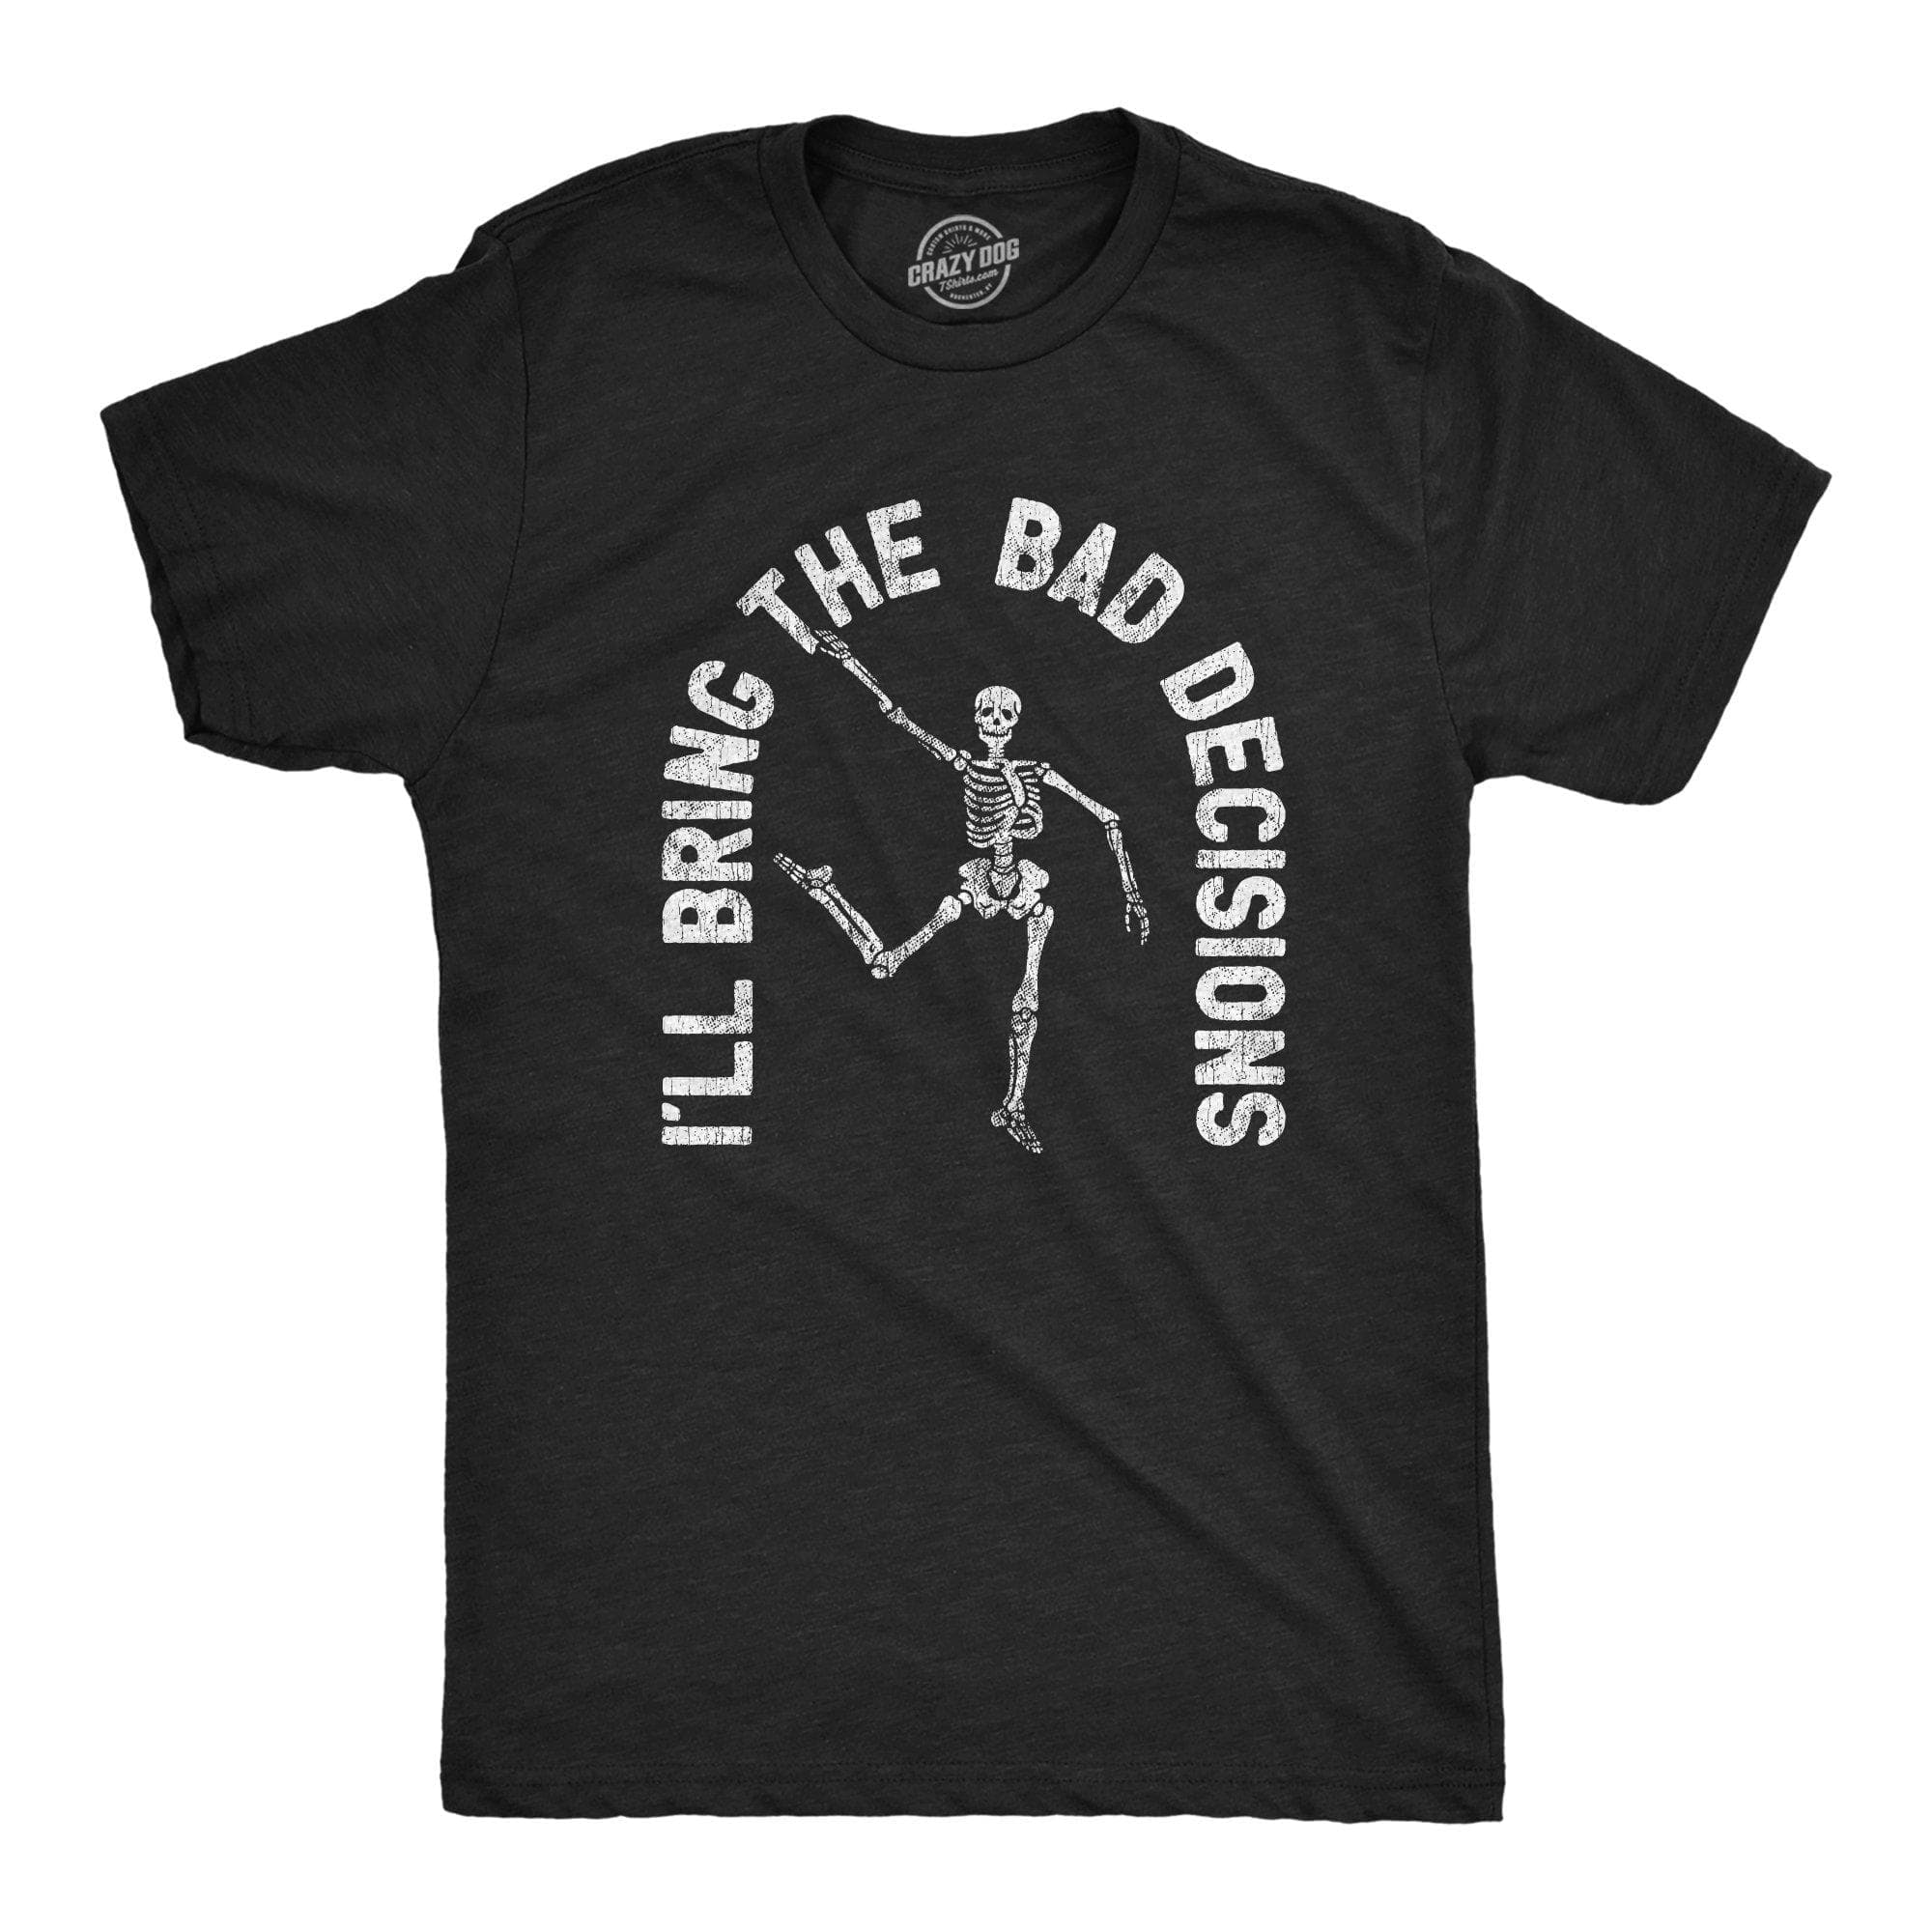 I'll Bring The Bad Decisions Men's Tshirt - Crazy Dog T-Shirts